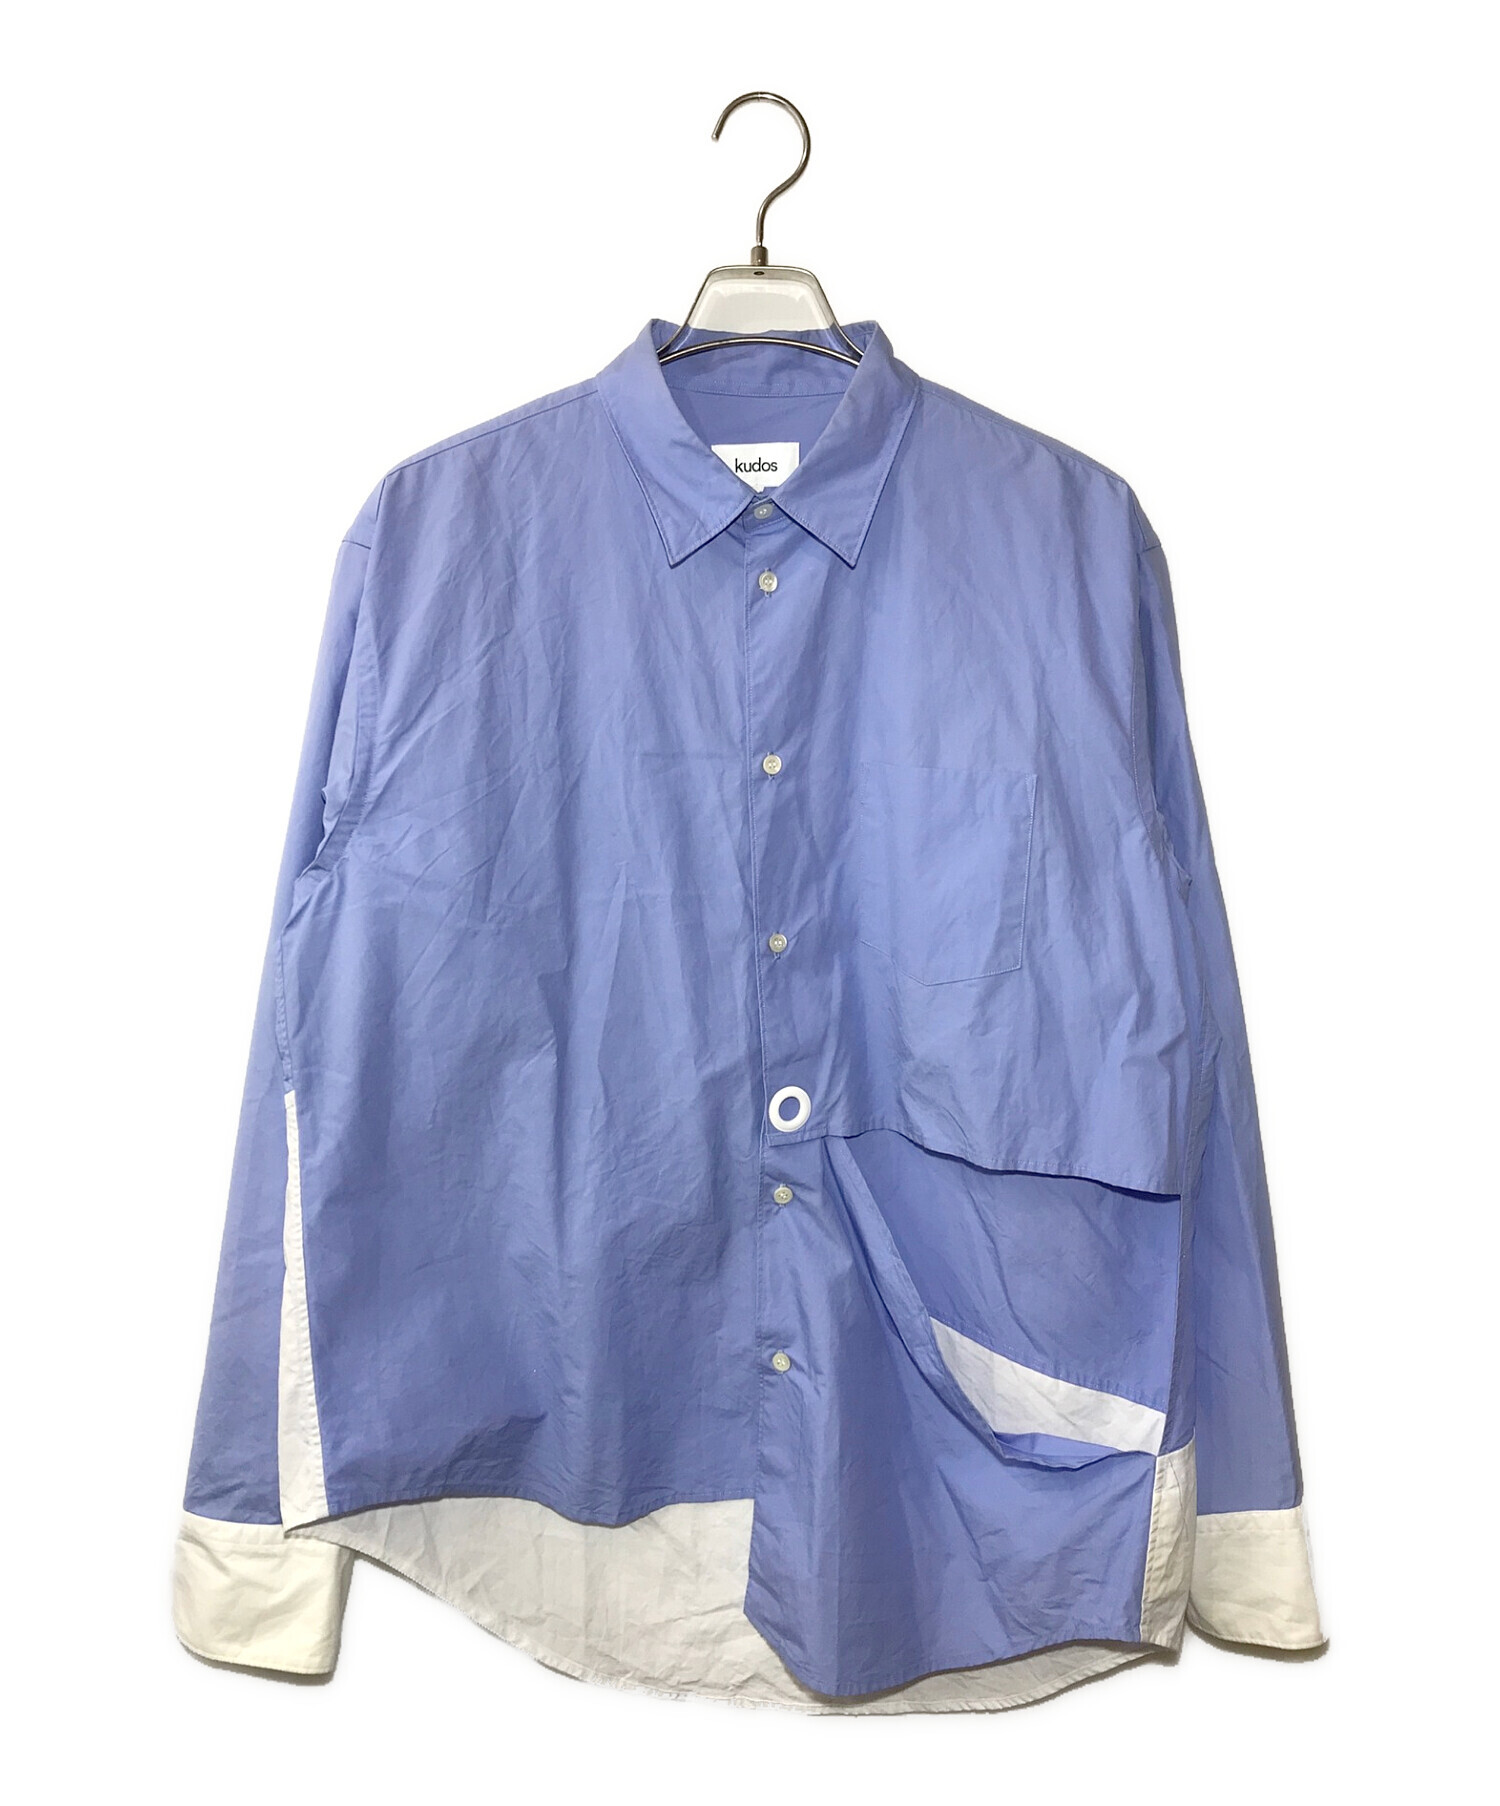 kudos (クードス) トライアングル ウィンドウ シャツ ブルー サイズ:2